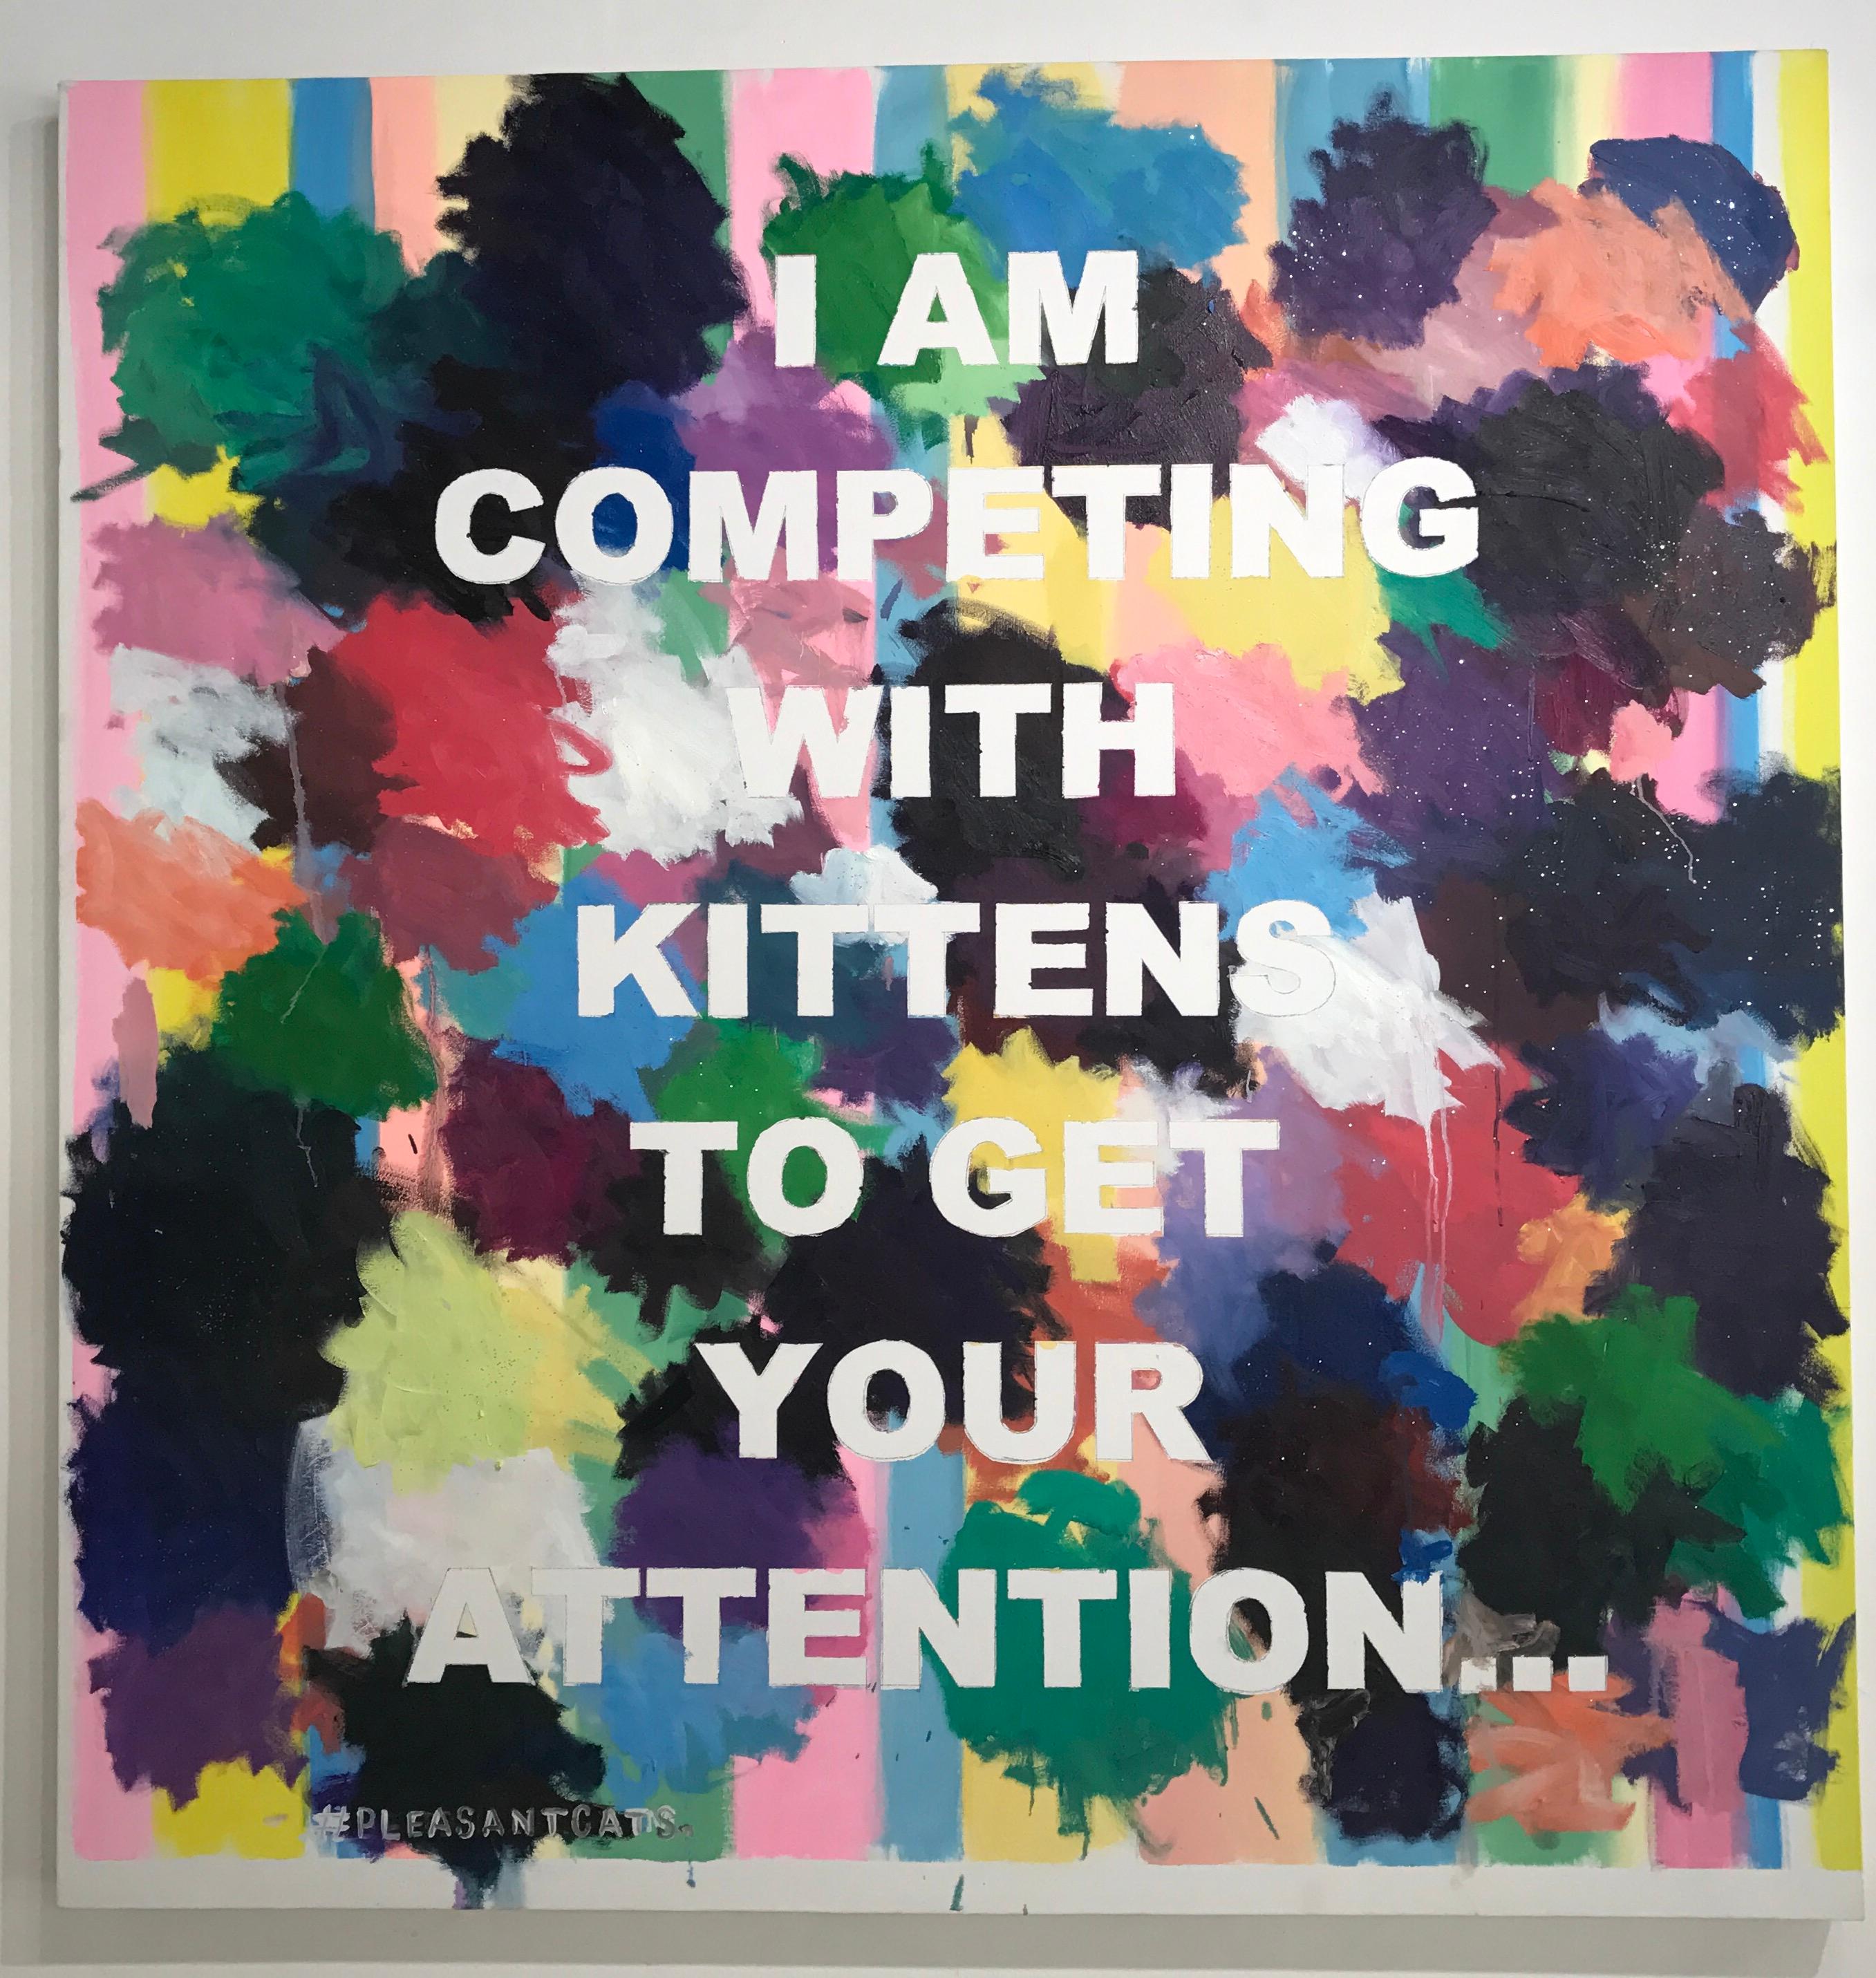 ""#Pleasantcats" Großformatige abstrakte,konzeptionelle Malerei mit Text – Mixed Media Art von David Kramer